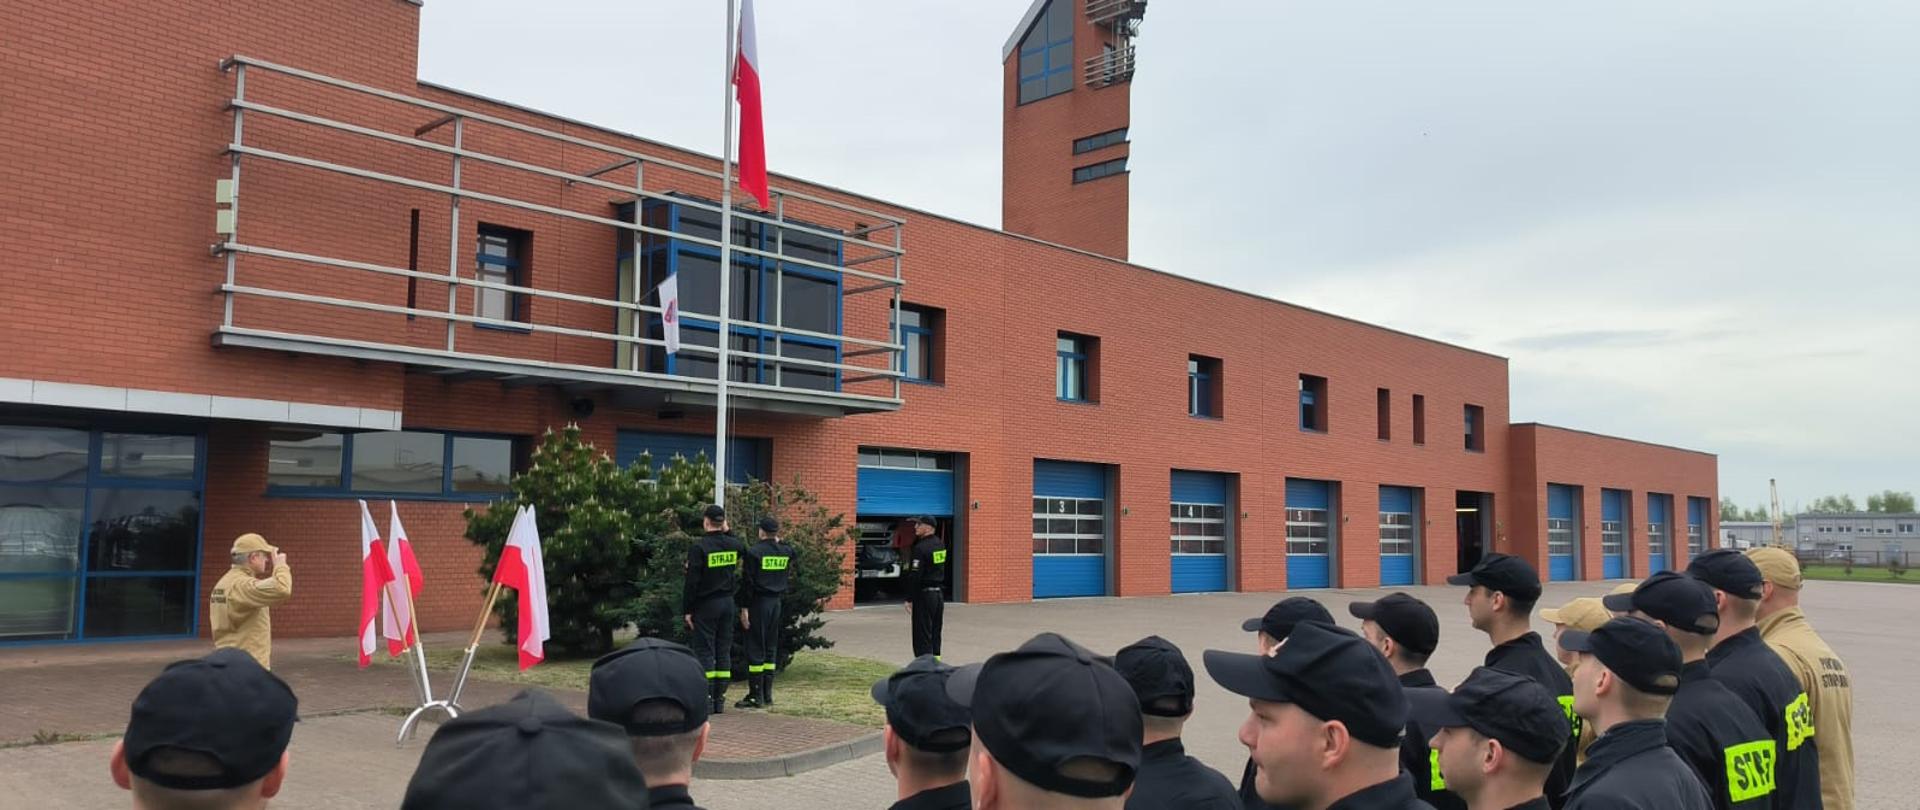 Poczet flagowy podczas wciągania flagi na maszt, obok komendant i w tle strażacy stojący w dwuszeregu